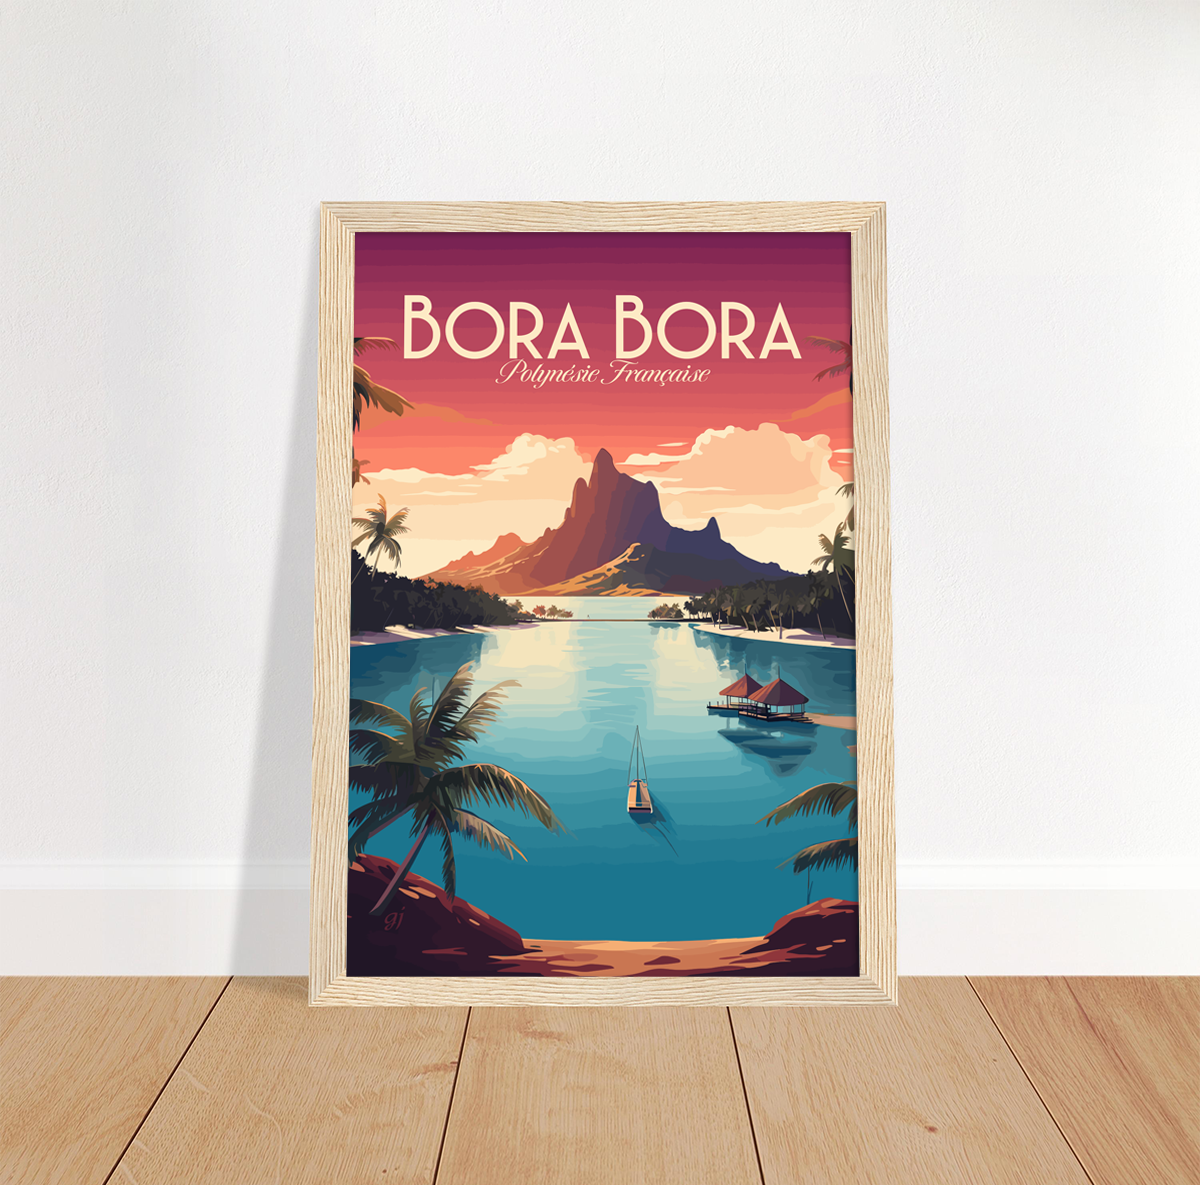 Bora Bora poster by bon voyage design